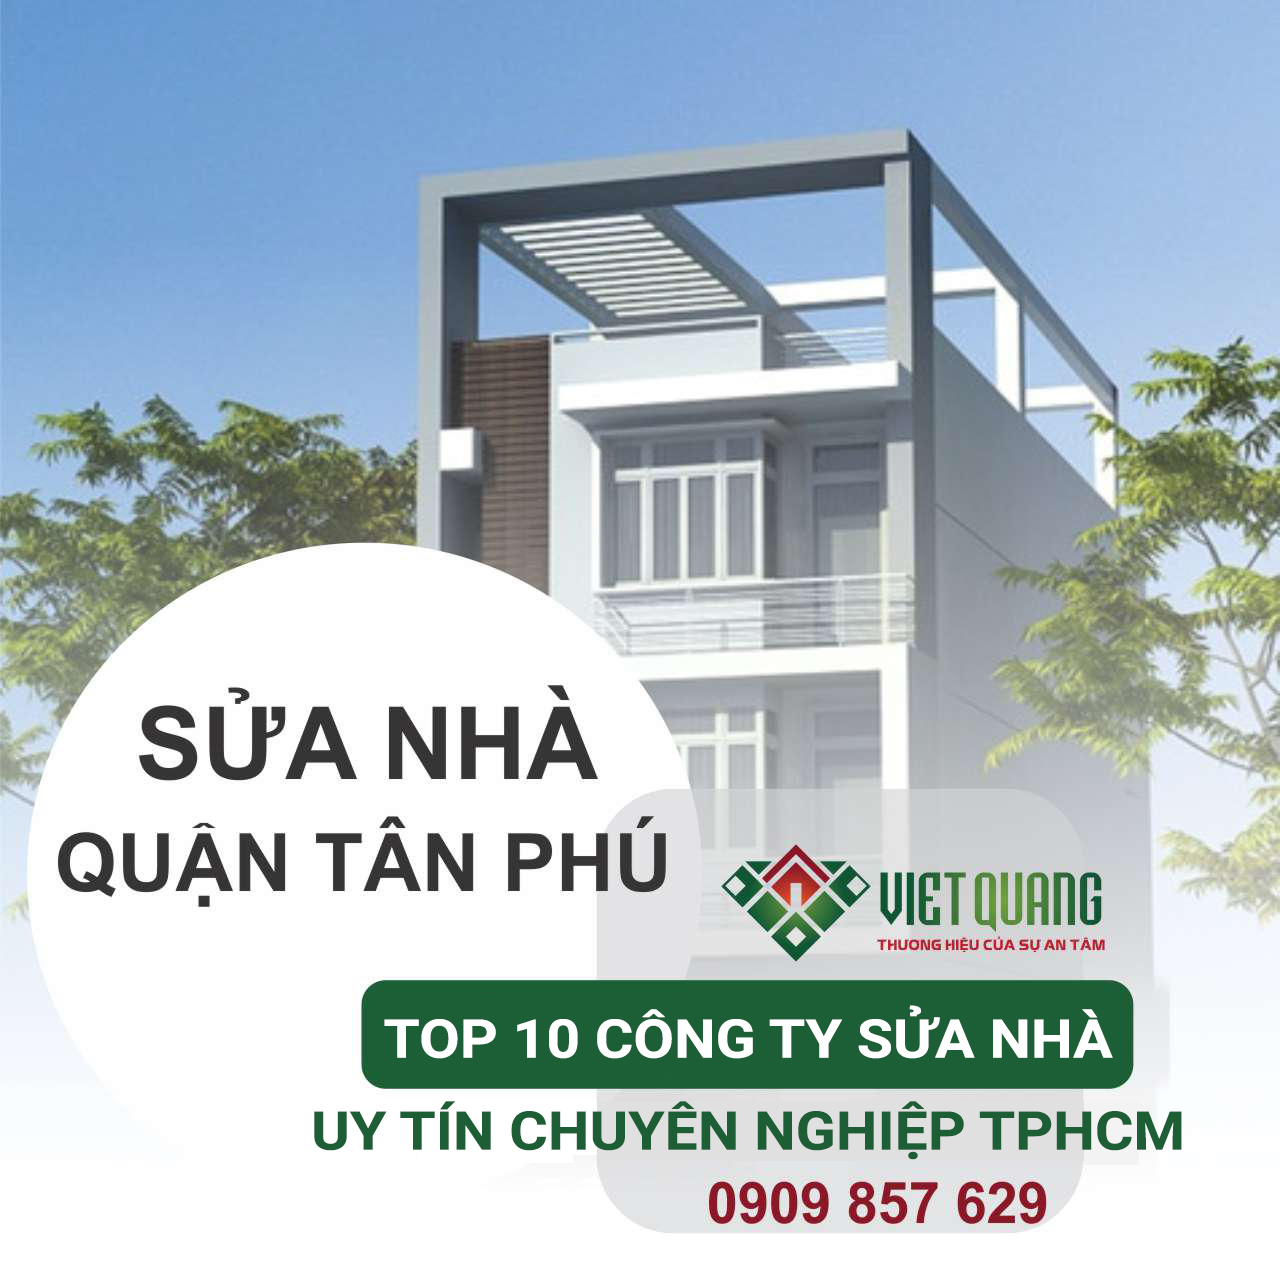 Top 10 công ty sửa chữa nhà giá rẻ uy tín tại Quận Tân Phú